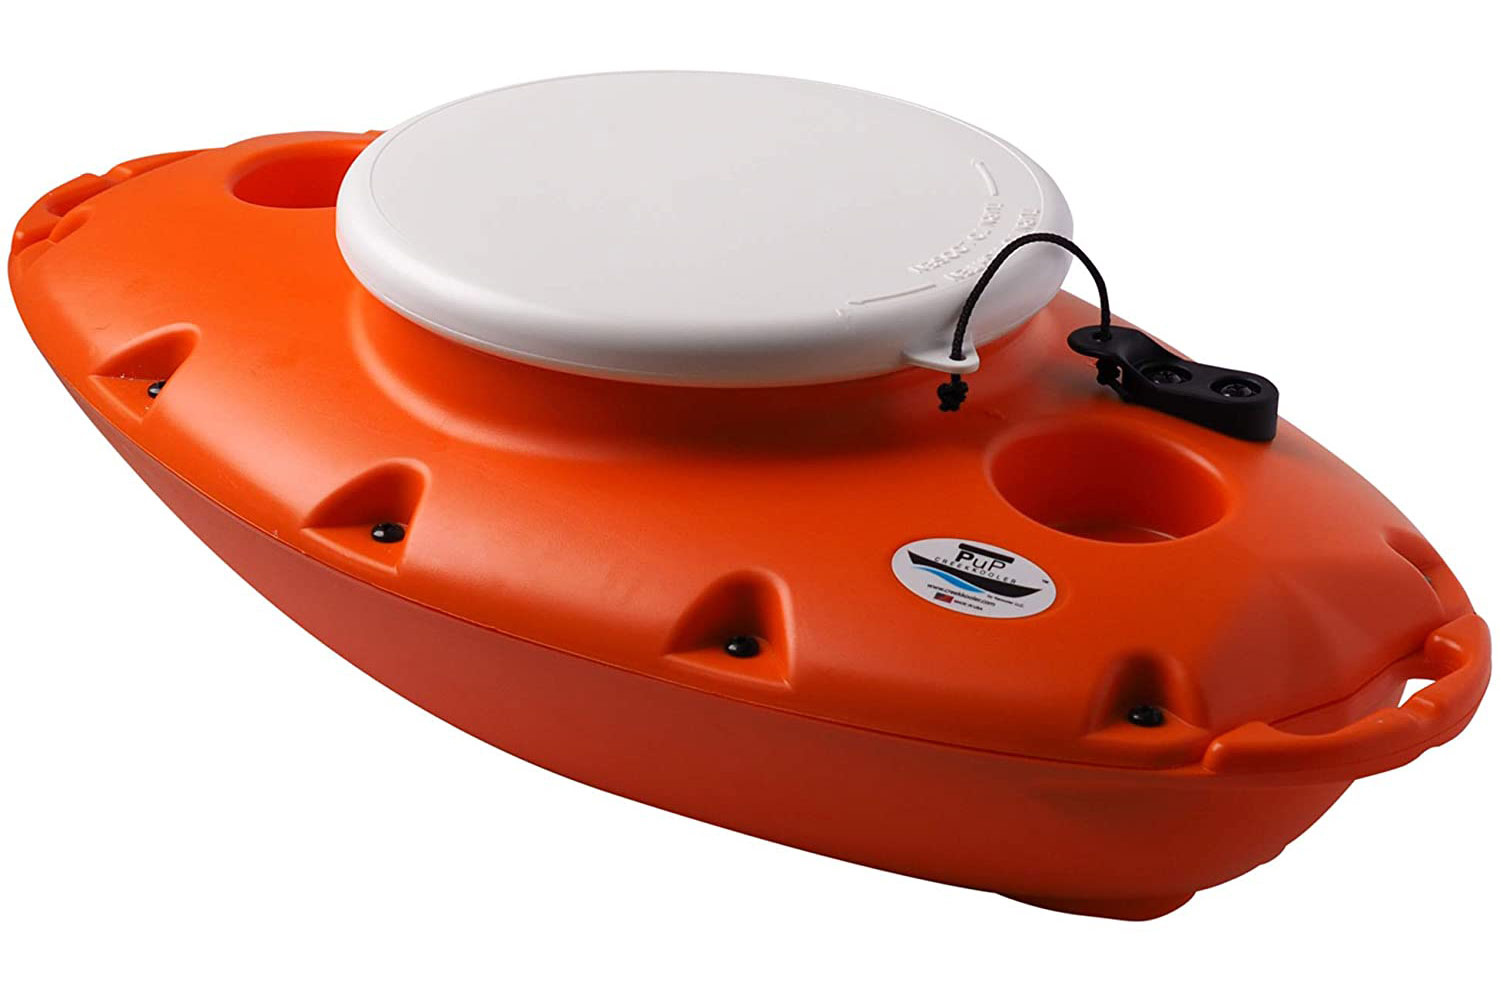 Live - HONEST Review of Big Bobber Floating Cooler